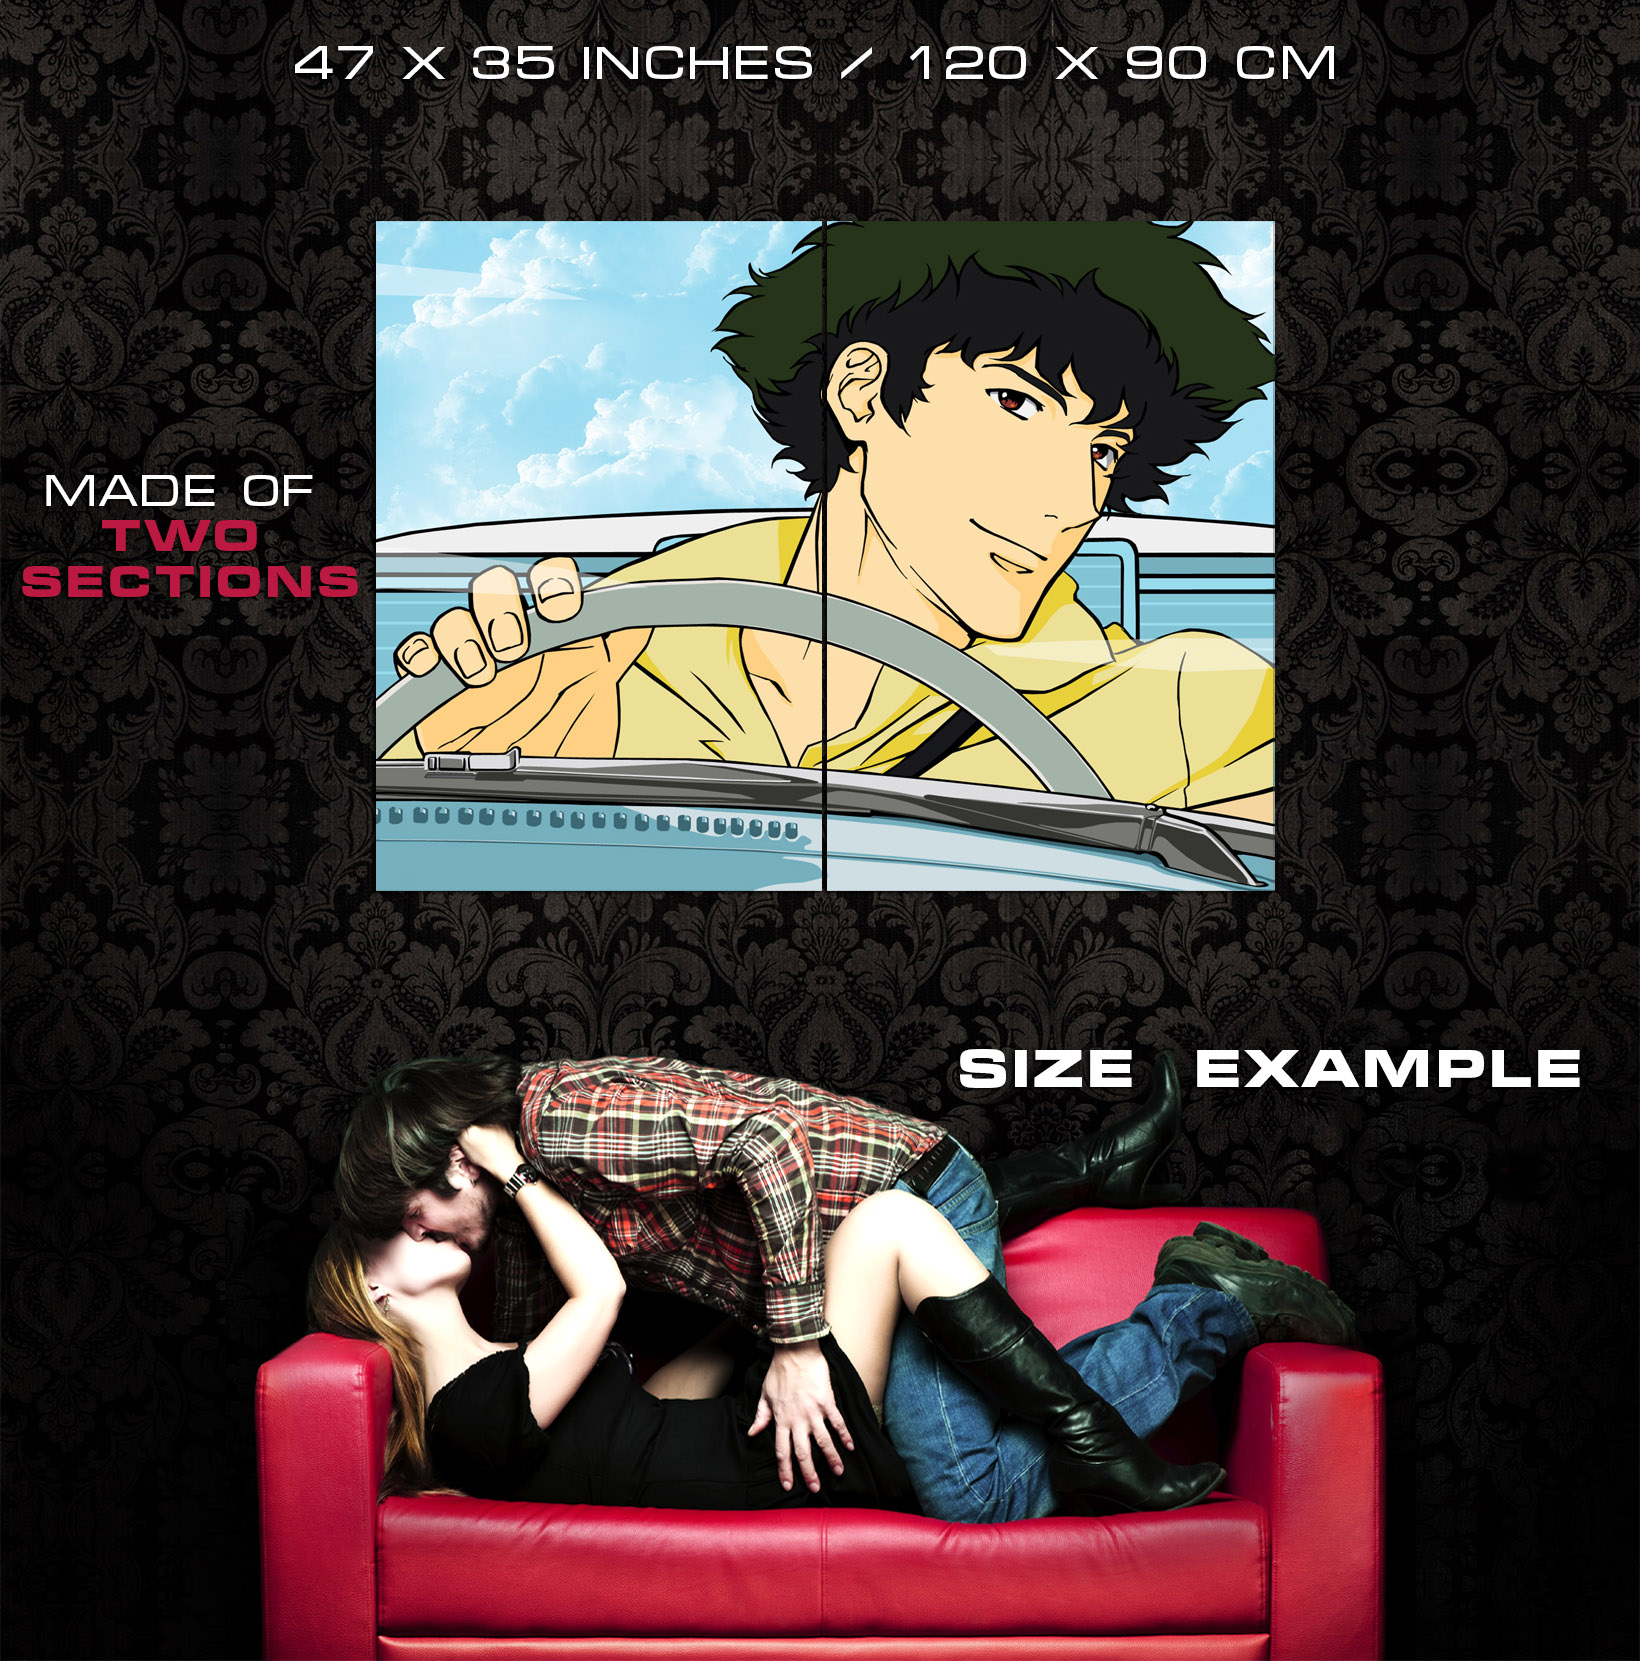 Cowboy Bebop Spike Spiegel Anime Manga Art Huge Giant Print POSTER Affiche 